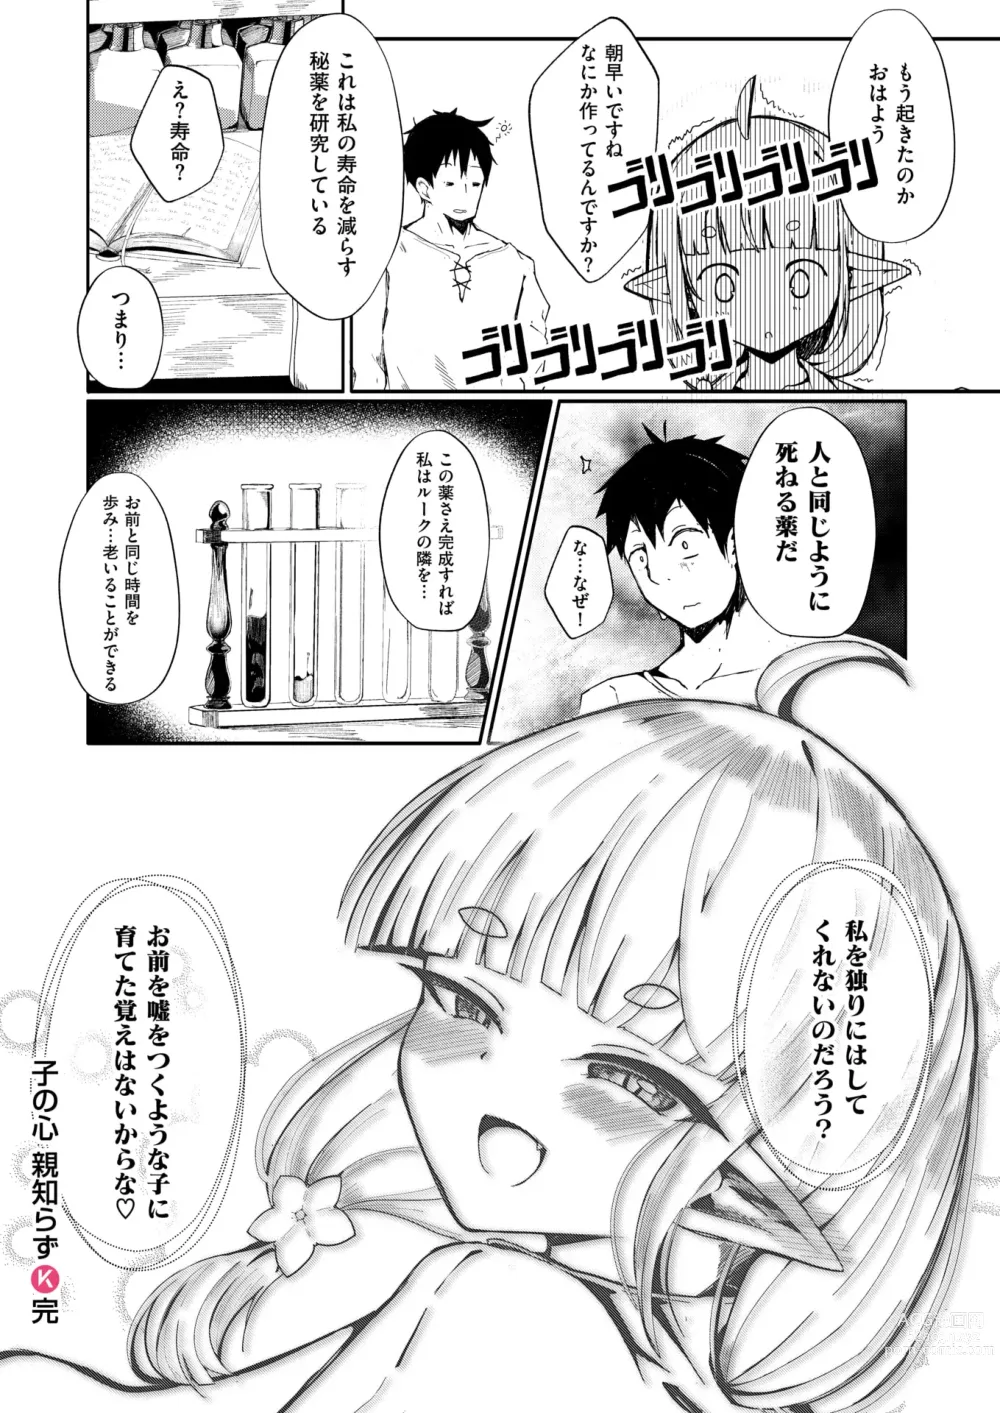 Page 30 of manga Kono Kokoro Oya Shirazu